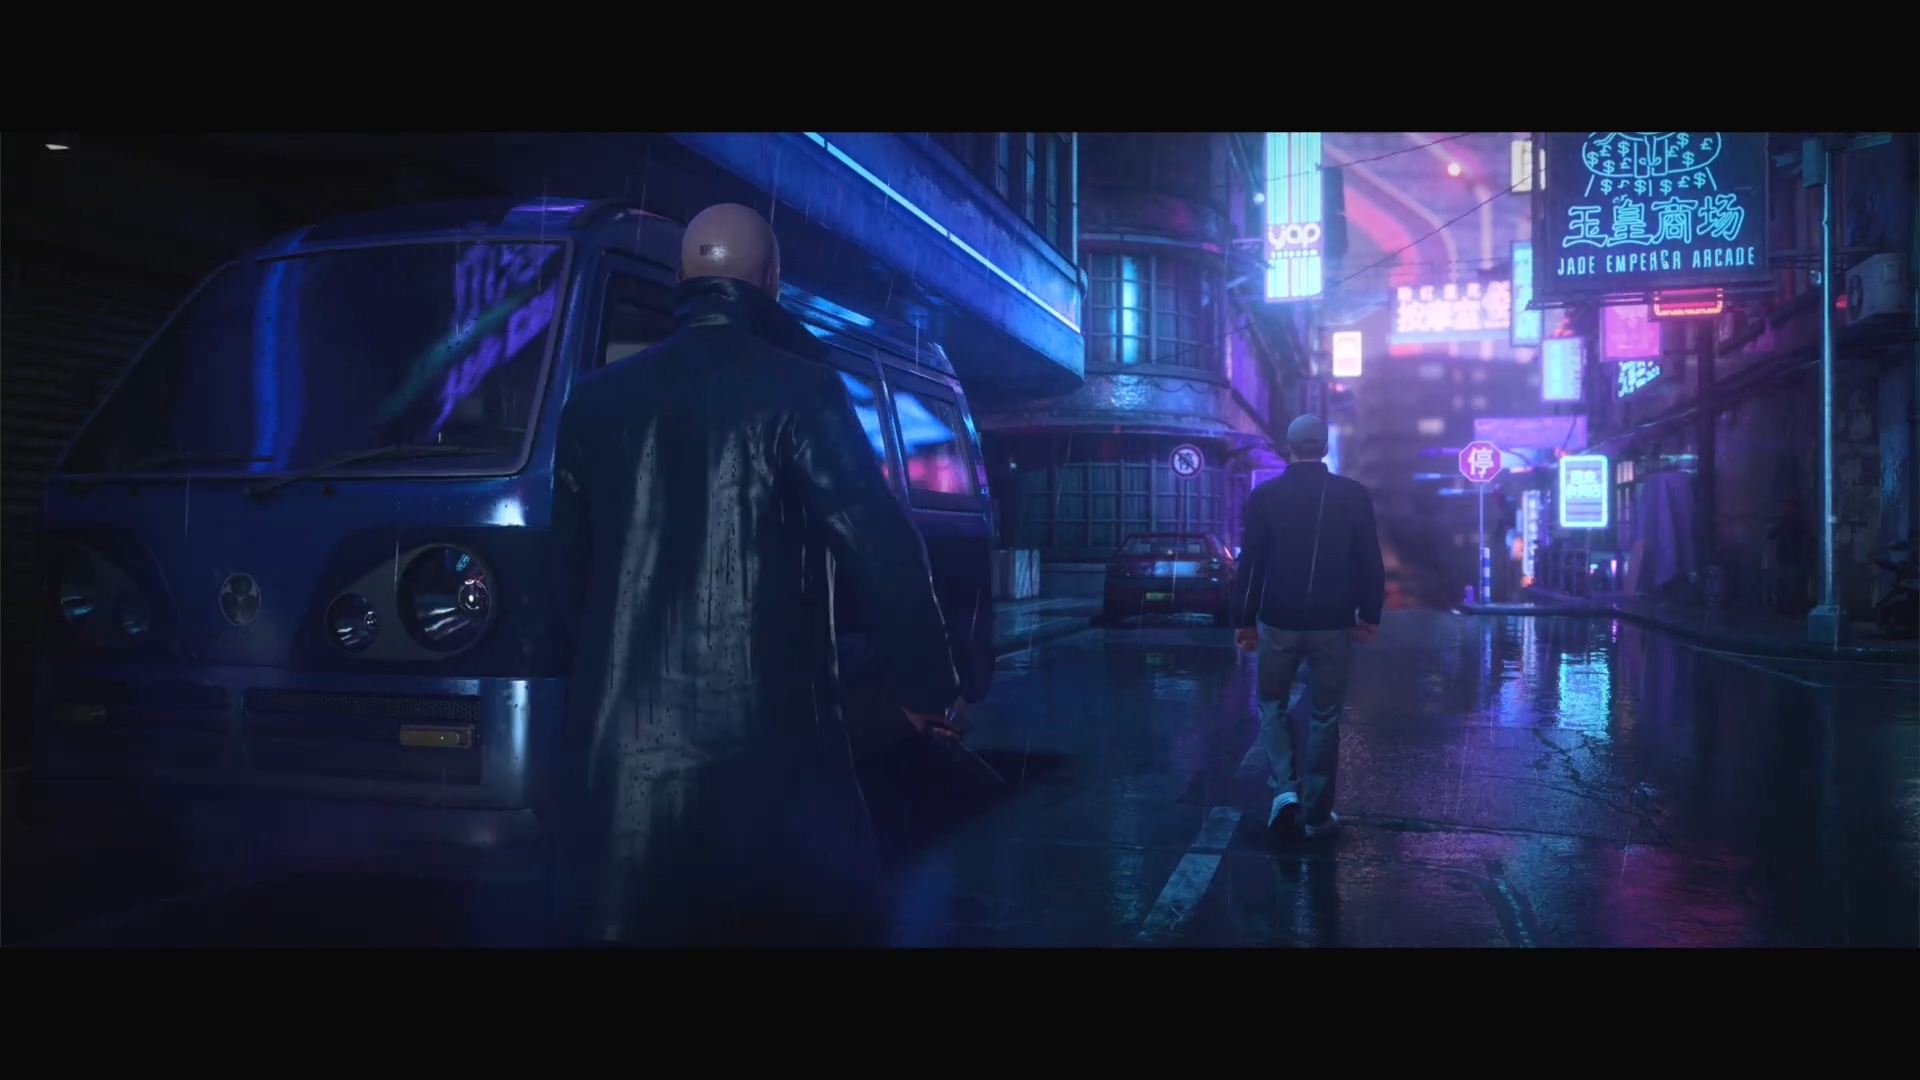 《杀手3》全新预告 灯红酒绿的重庆街道暗藏杀机